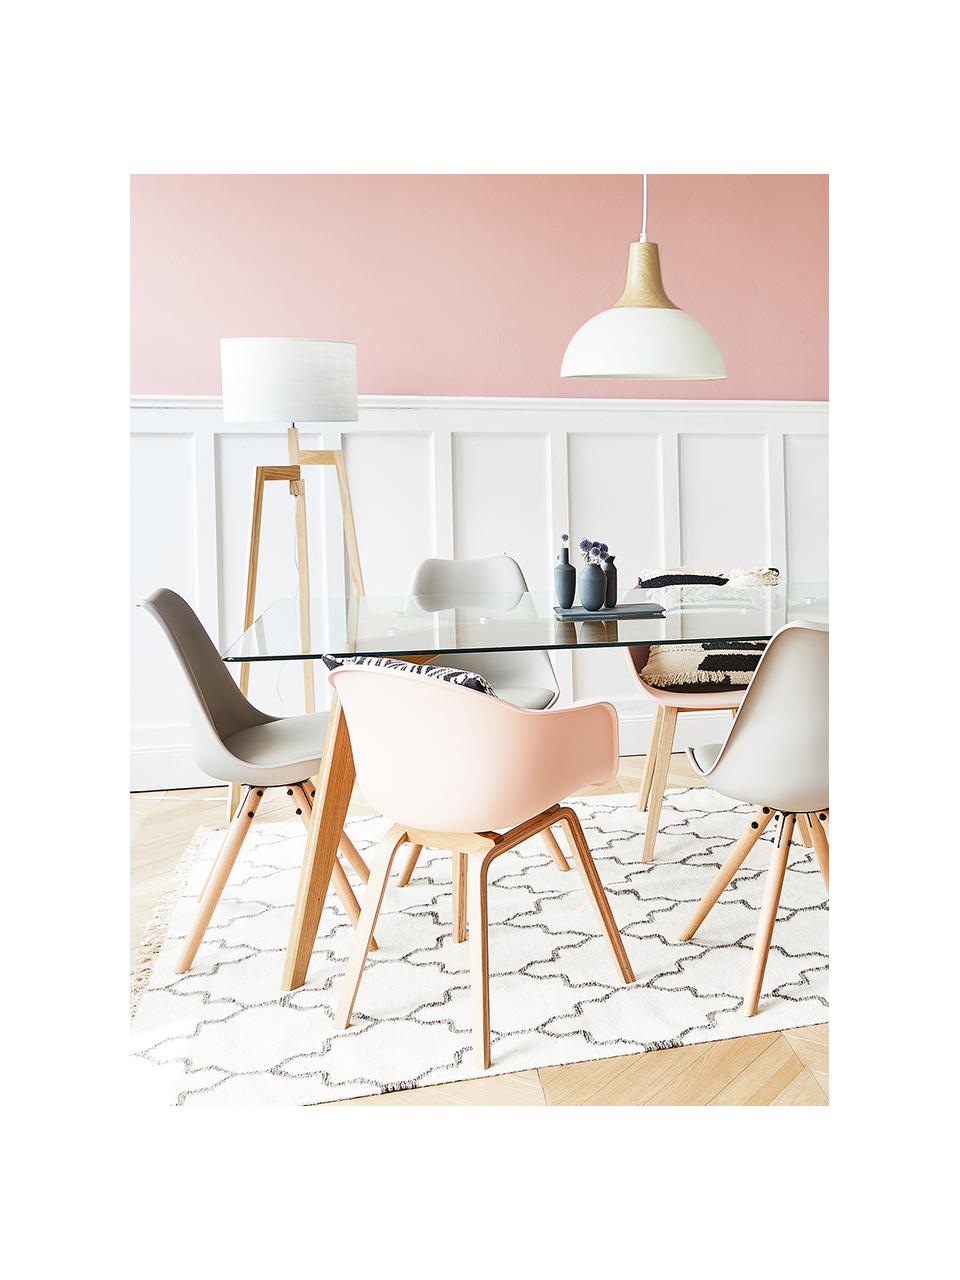 Krzesło z podłokietnikami z tworzywa sztucznego Claire, Nogi: drewno bukowe, Blady różowy, S 60 x G 54 cm